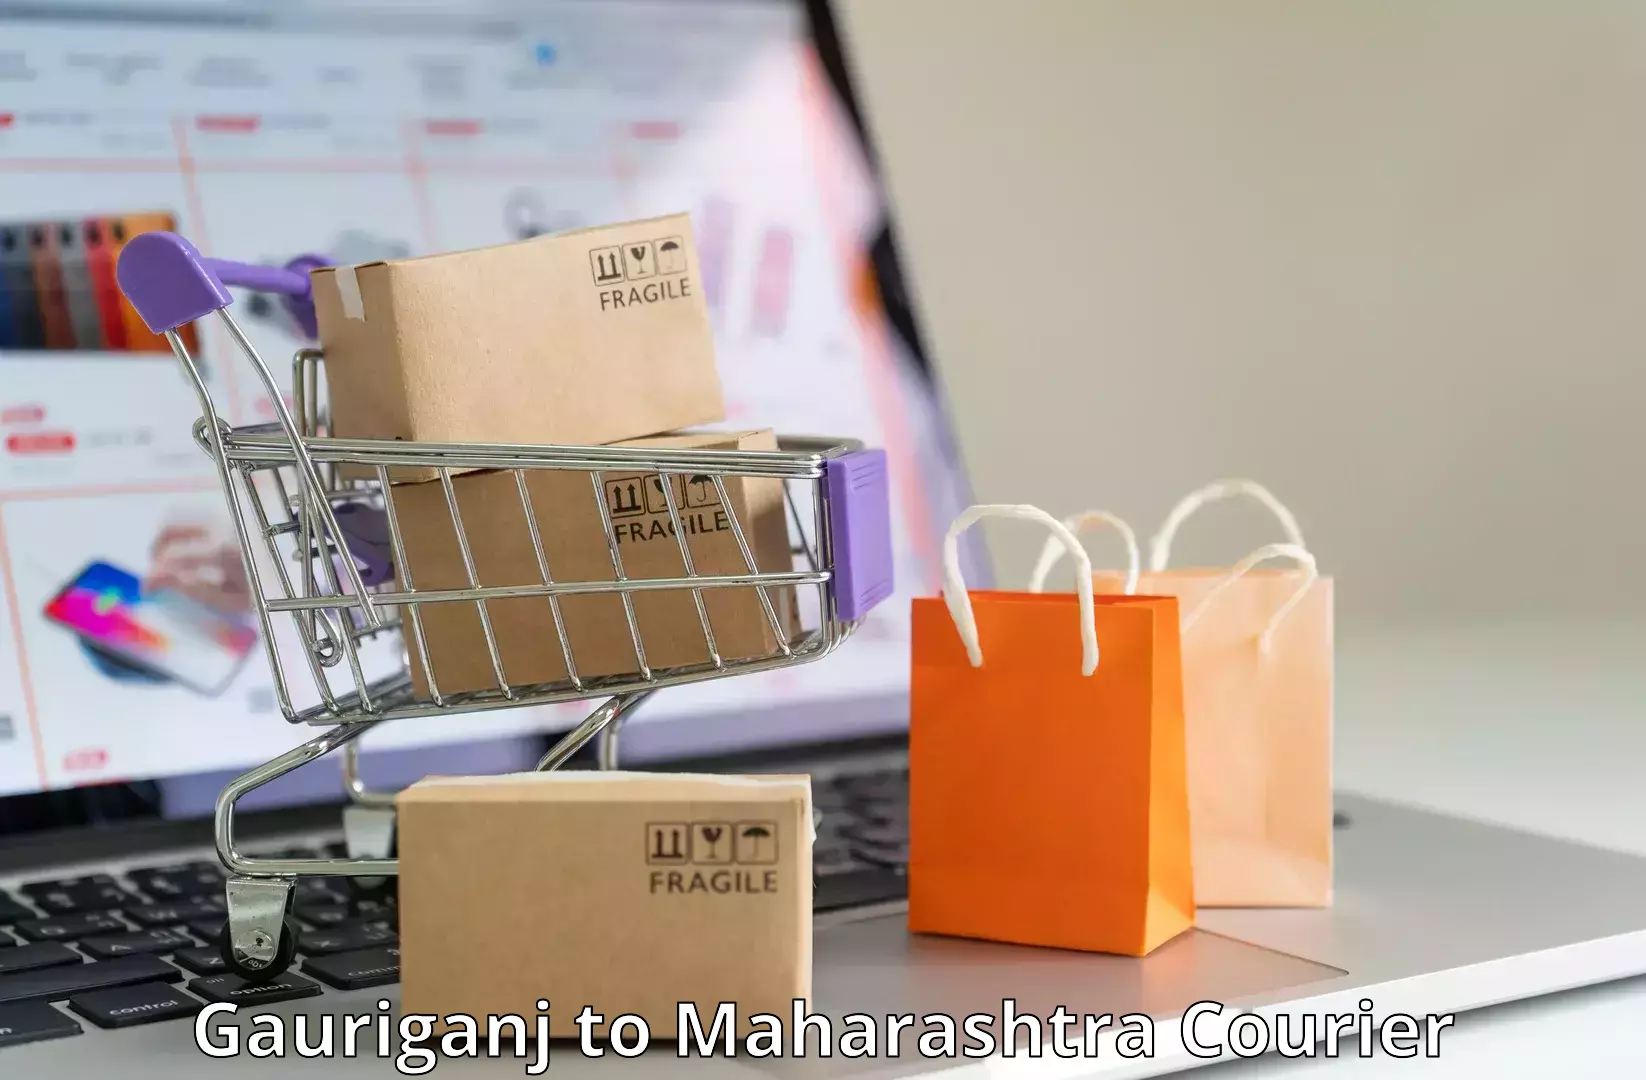 Premium courier solutions Gauriganj to Ratnagiri